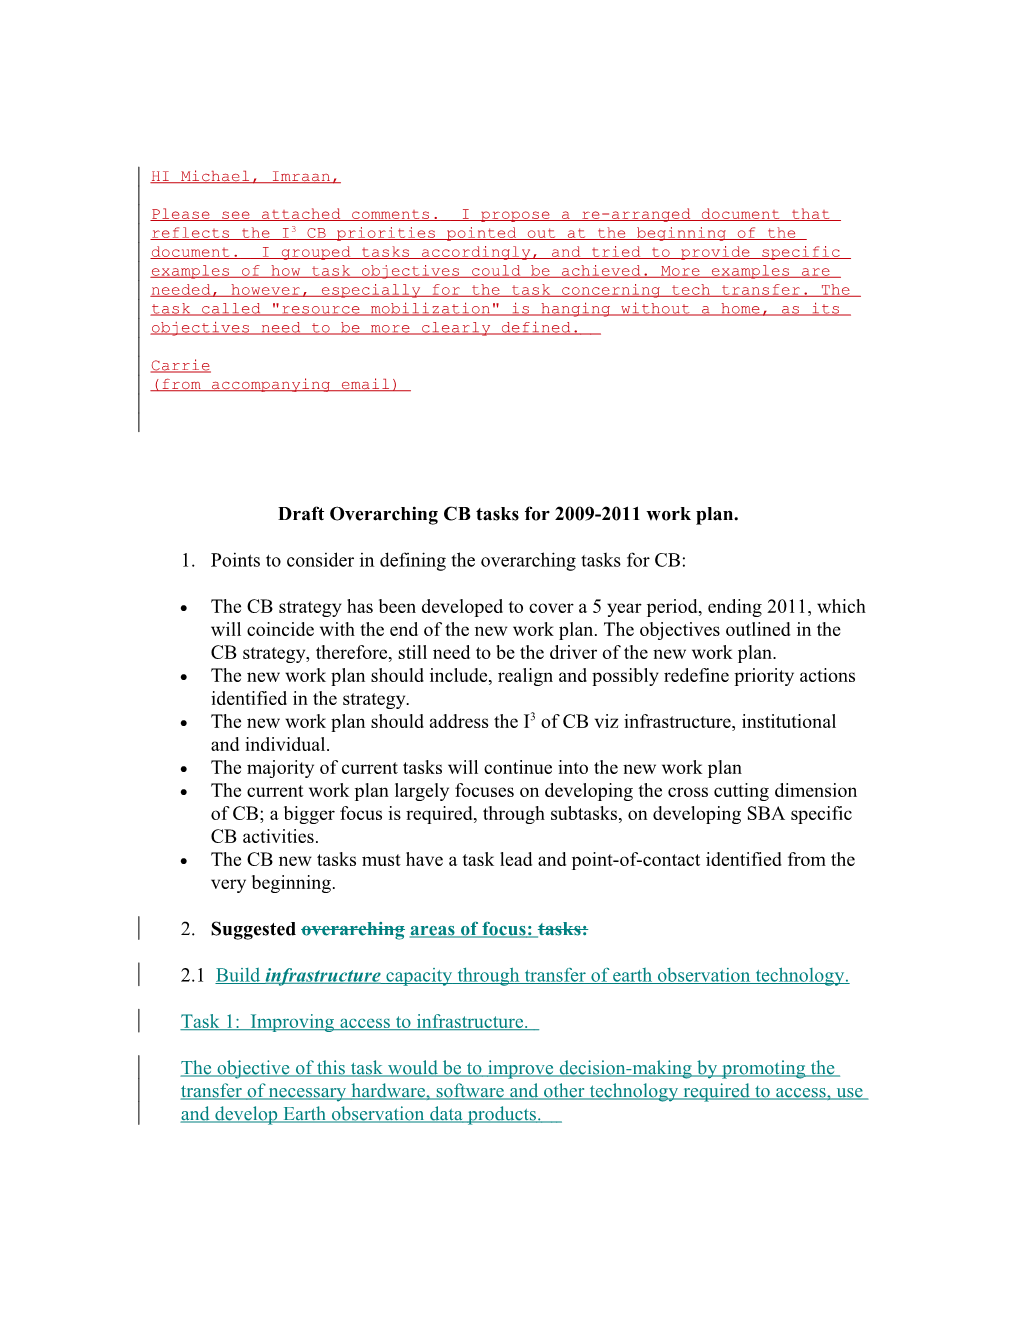 Draft Overarching CB Tasks for 2009-2011 Work Plan